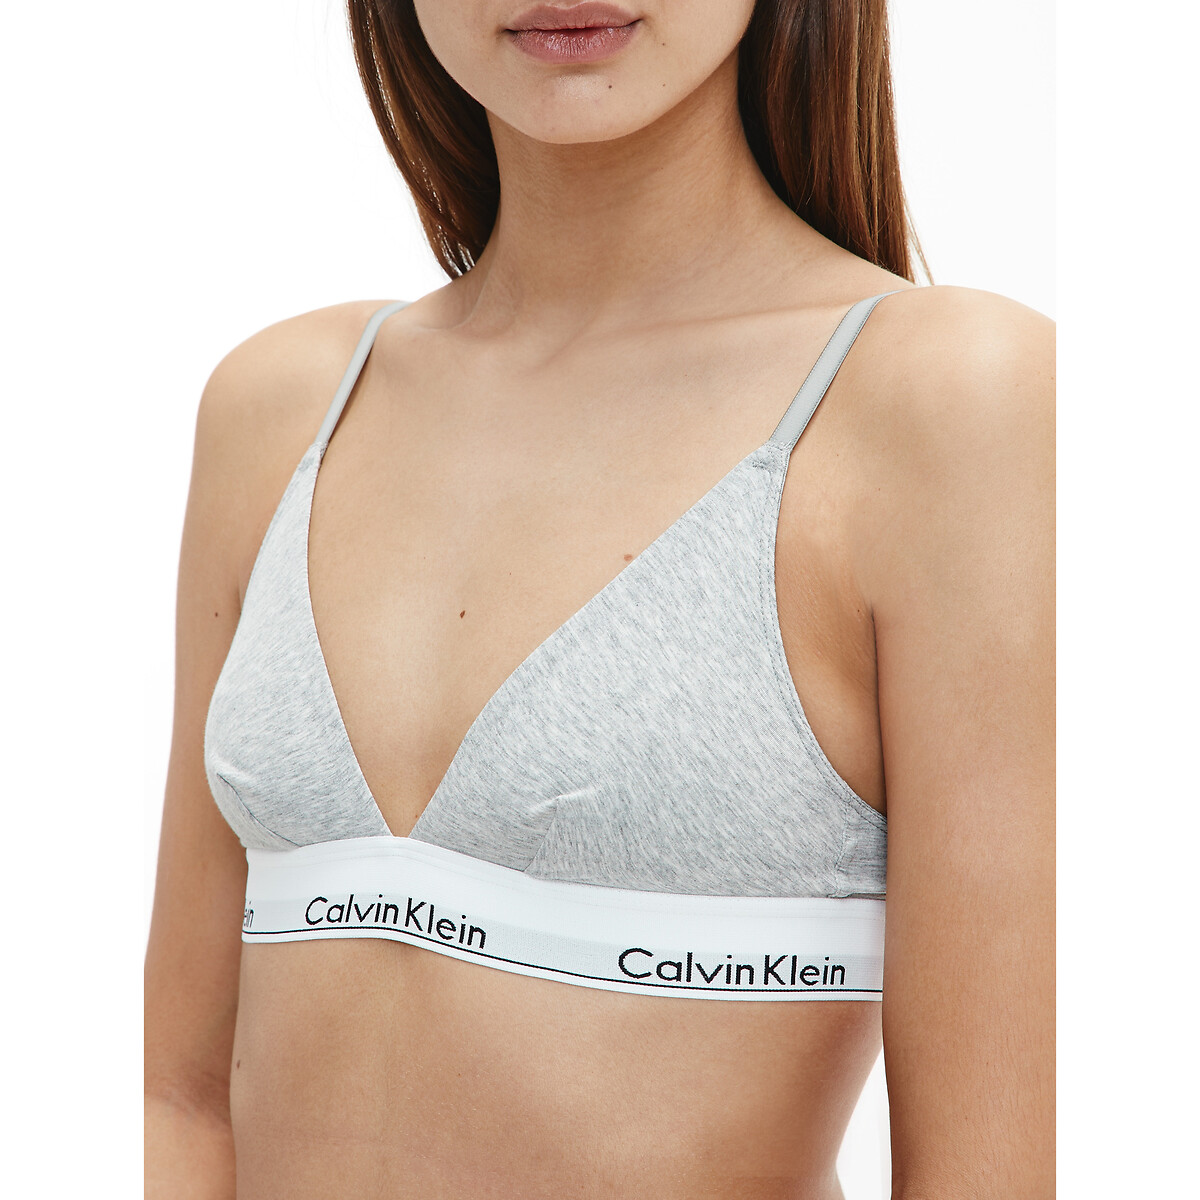 Soutien modern cotton Calvin Klein Underwear